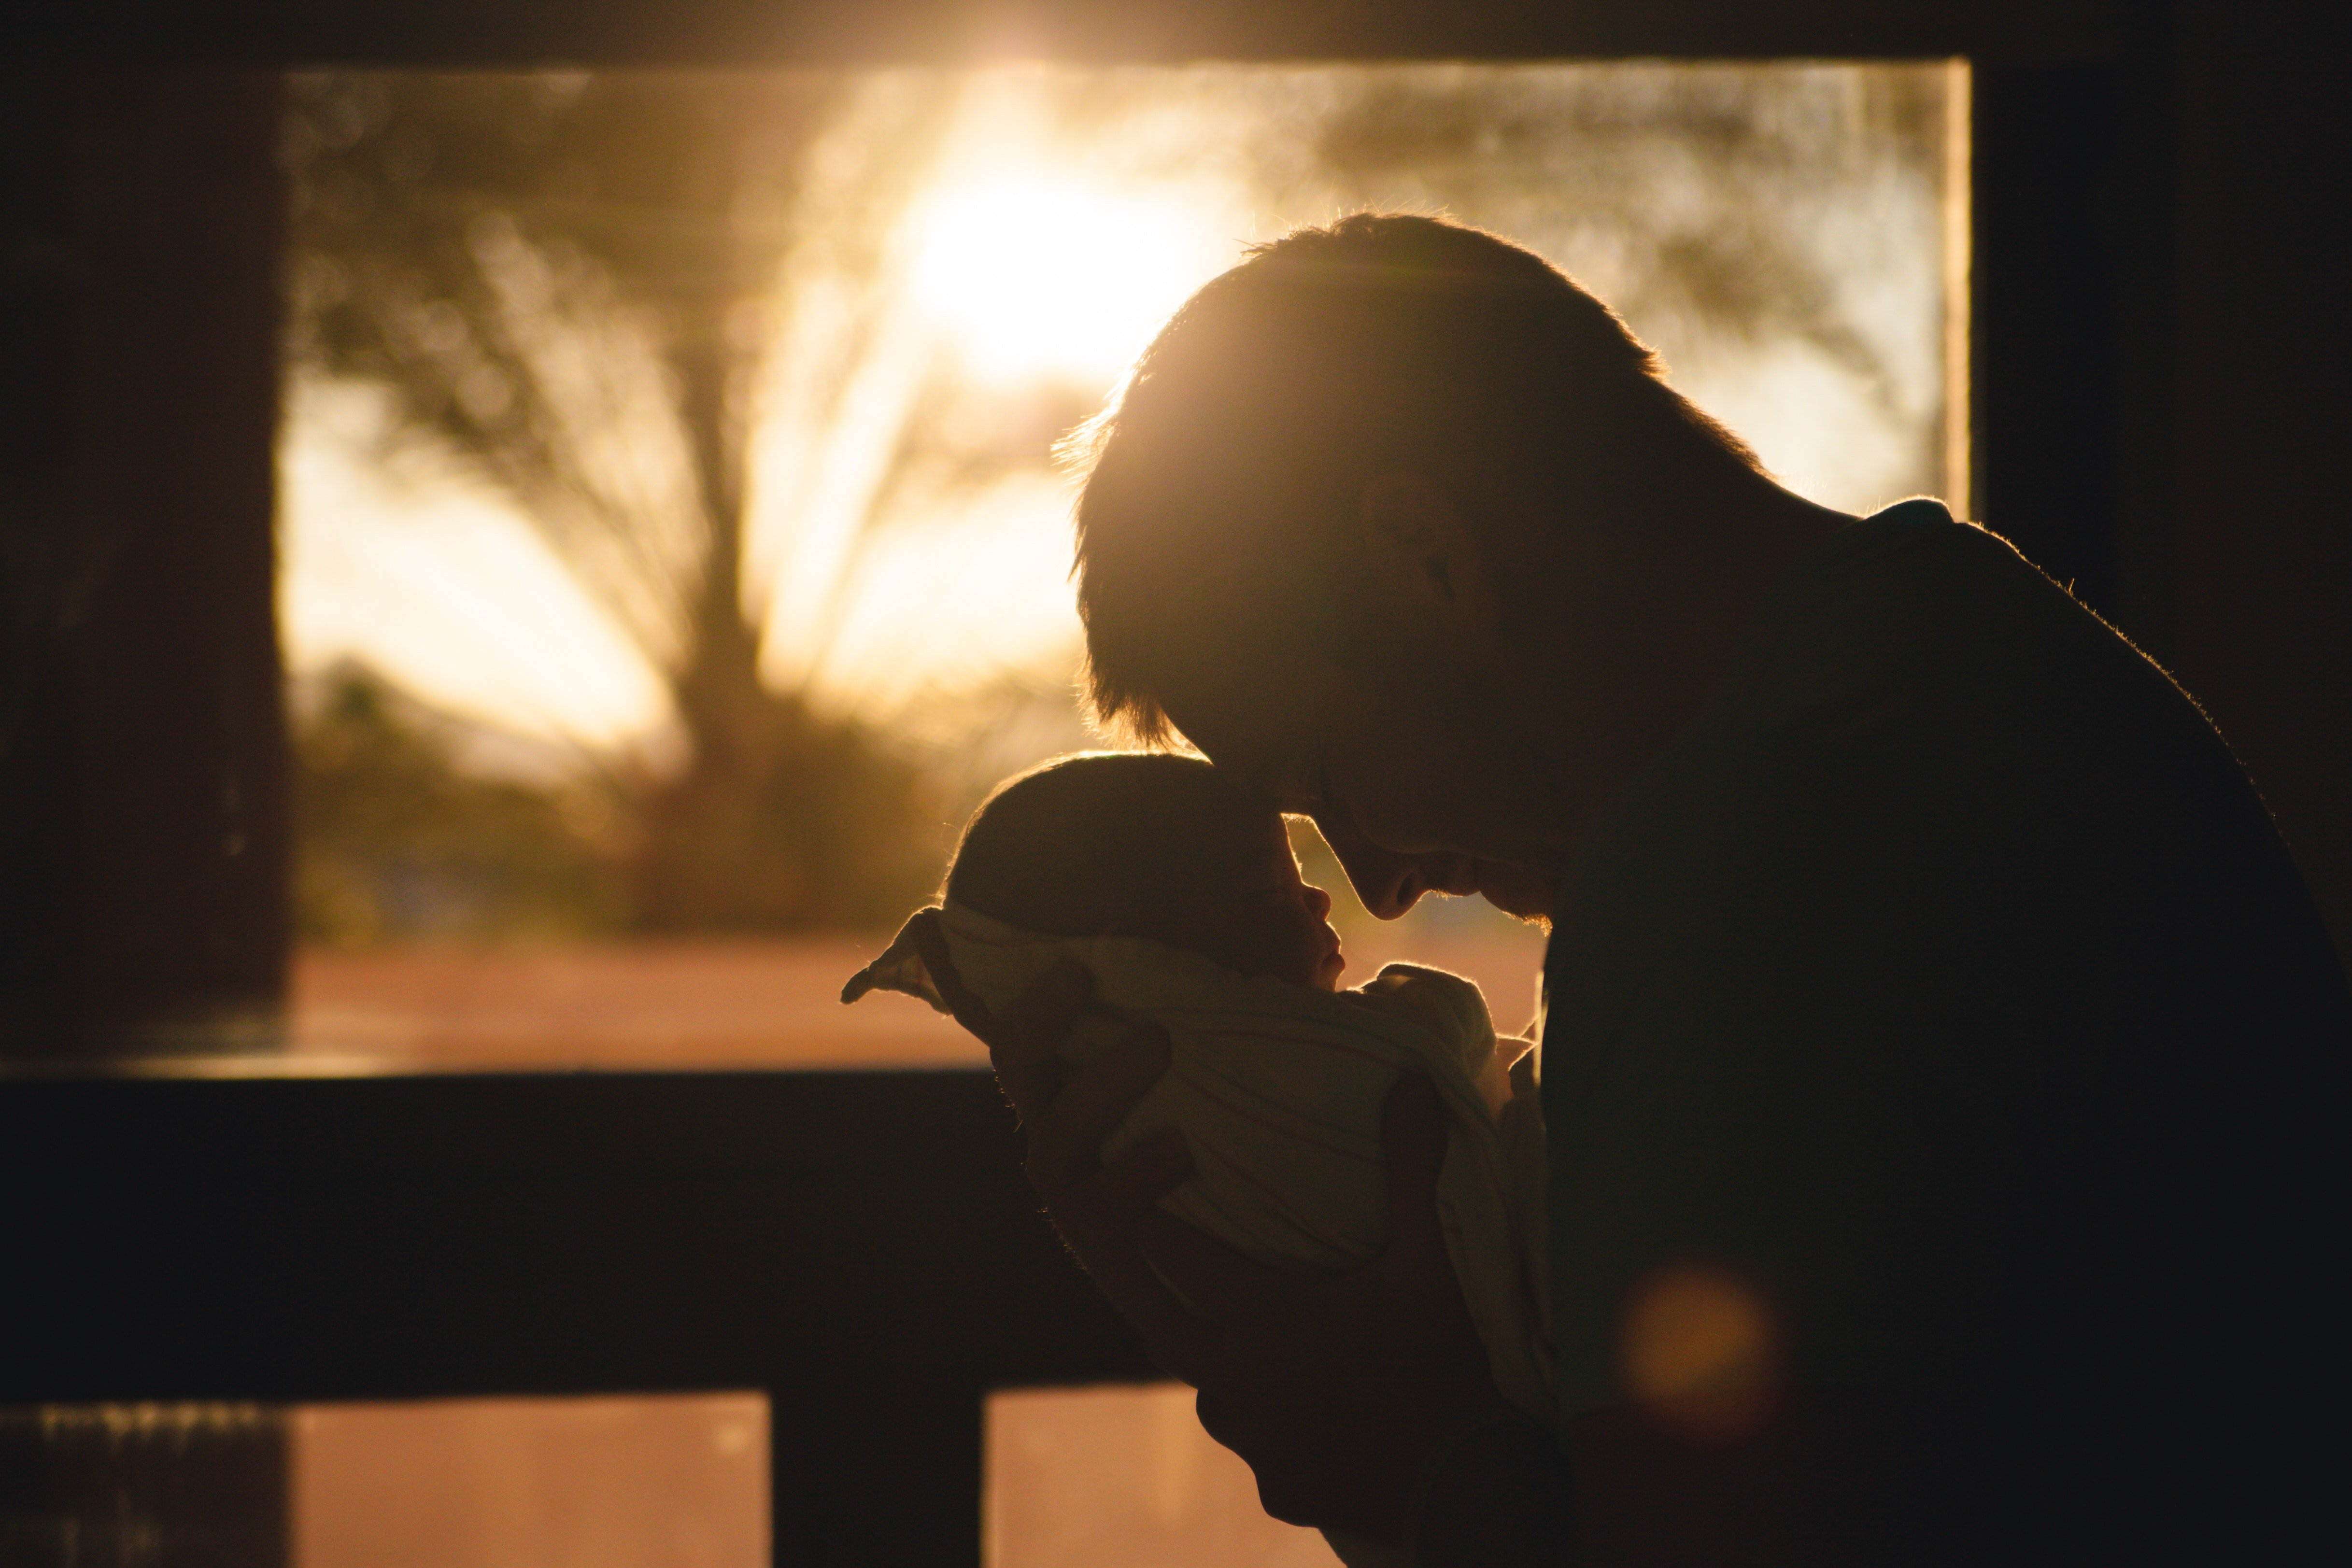 Der Mann entnahm seinem Baby heimlich die DNA-Proben | Quelle: Pexels